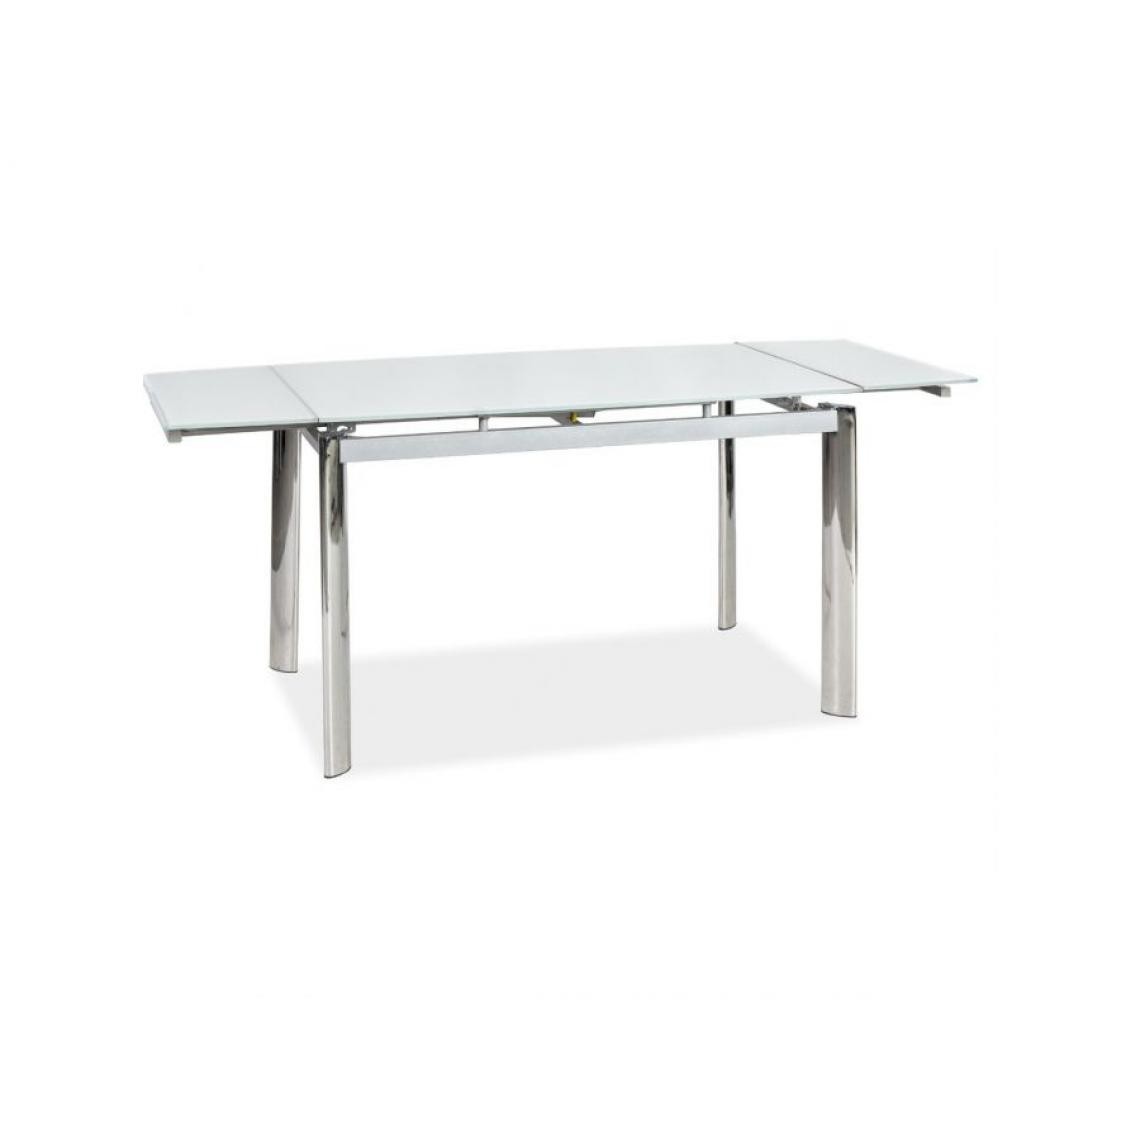 Hucoco - KLEY - Table extensible salle à manger/salon - 110x74x75 cm - Plateau en verre trempé - Base en métal - Blanc - Tables d'appoint